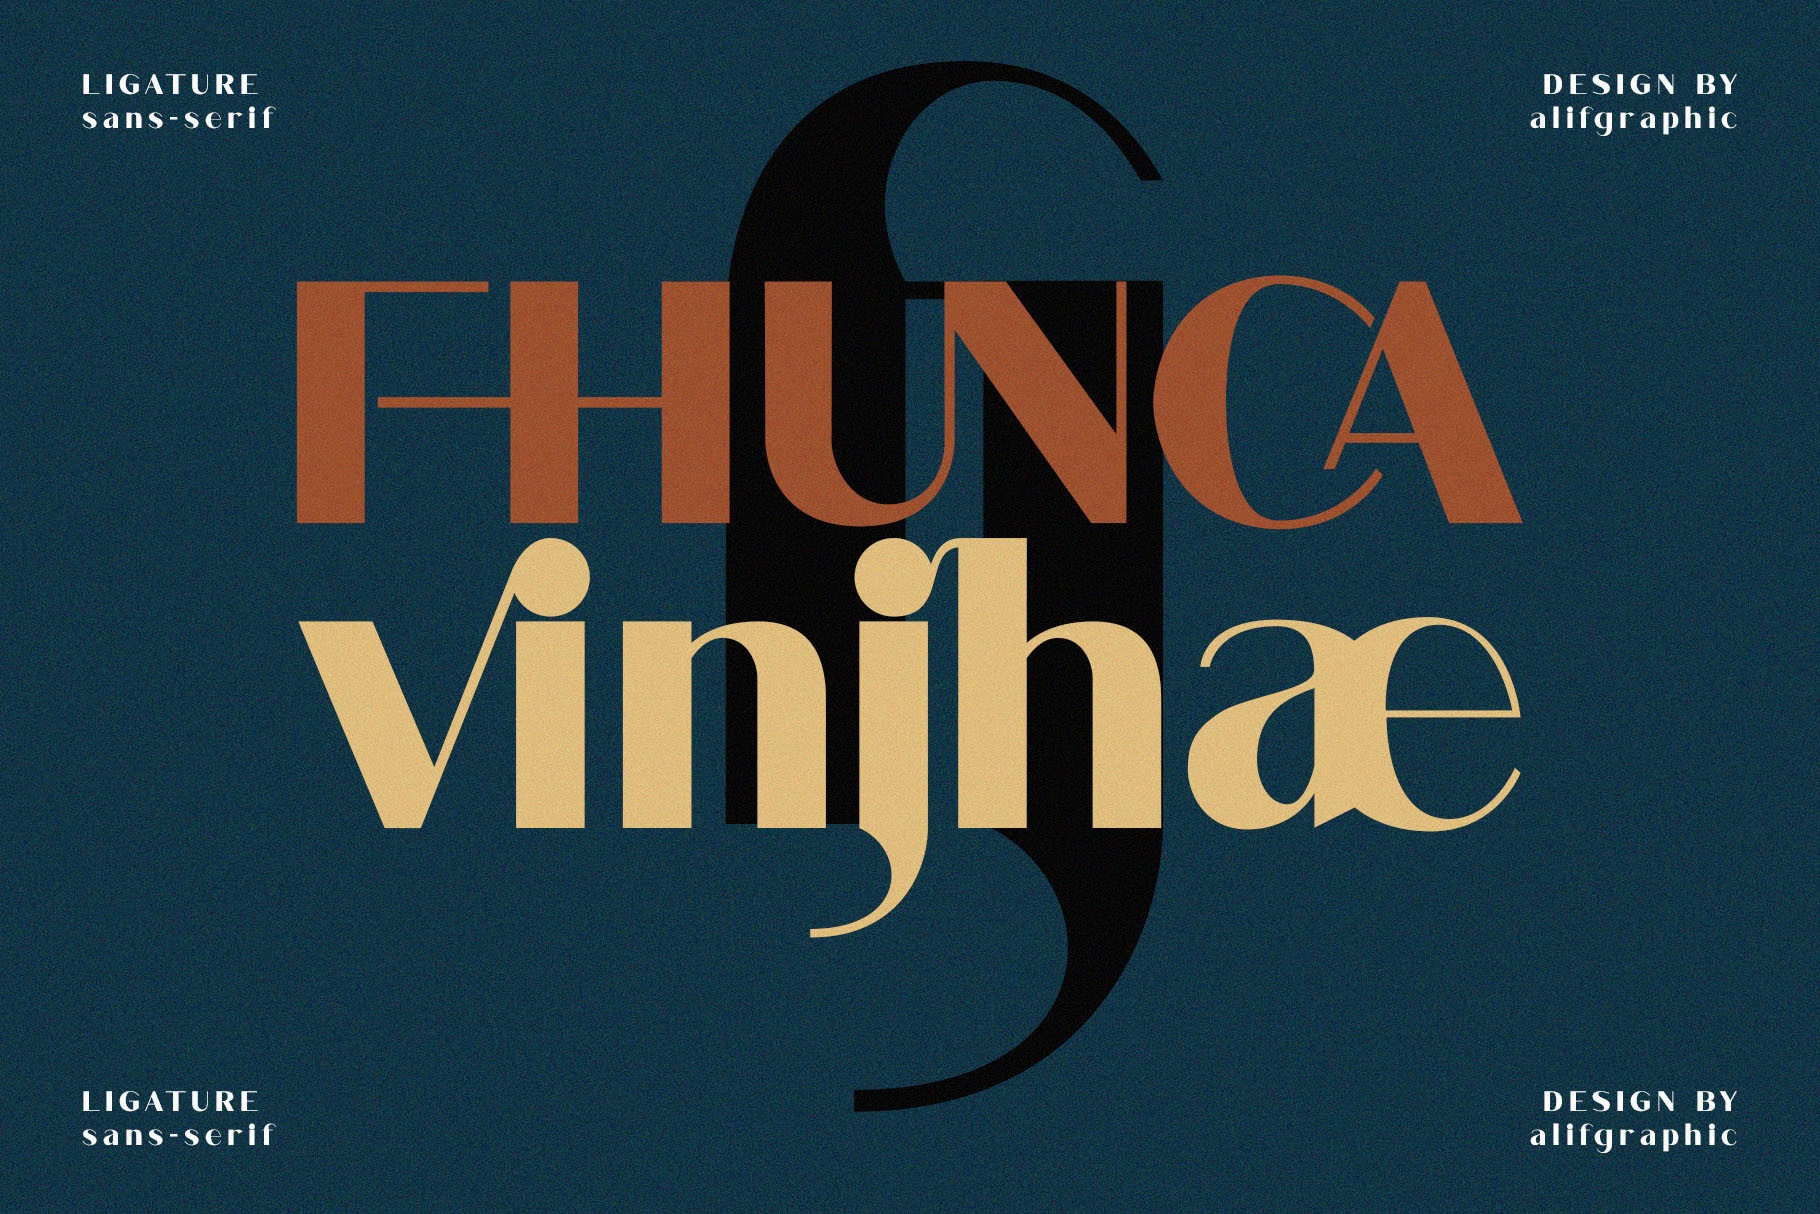 Ejemplo de fuente Fhunca Vinjhae